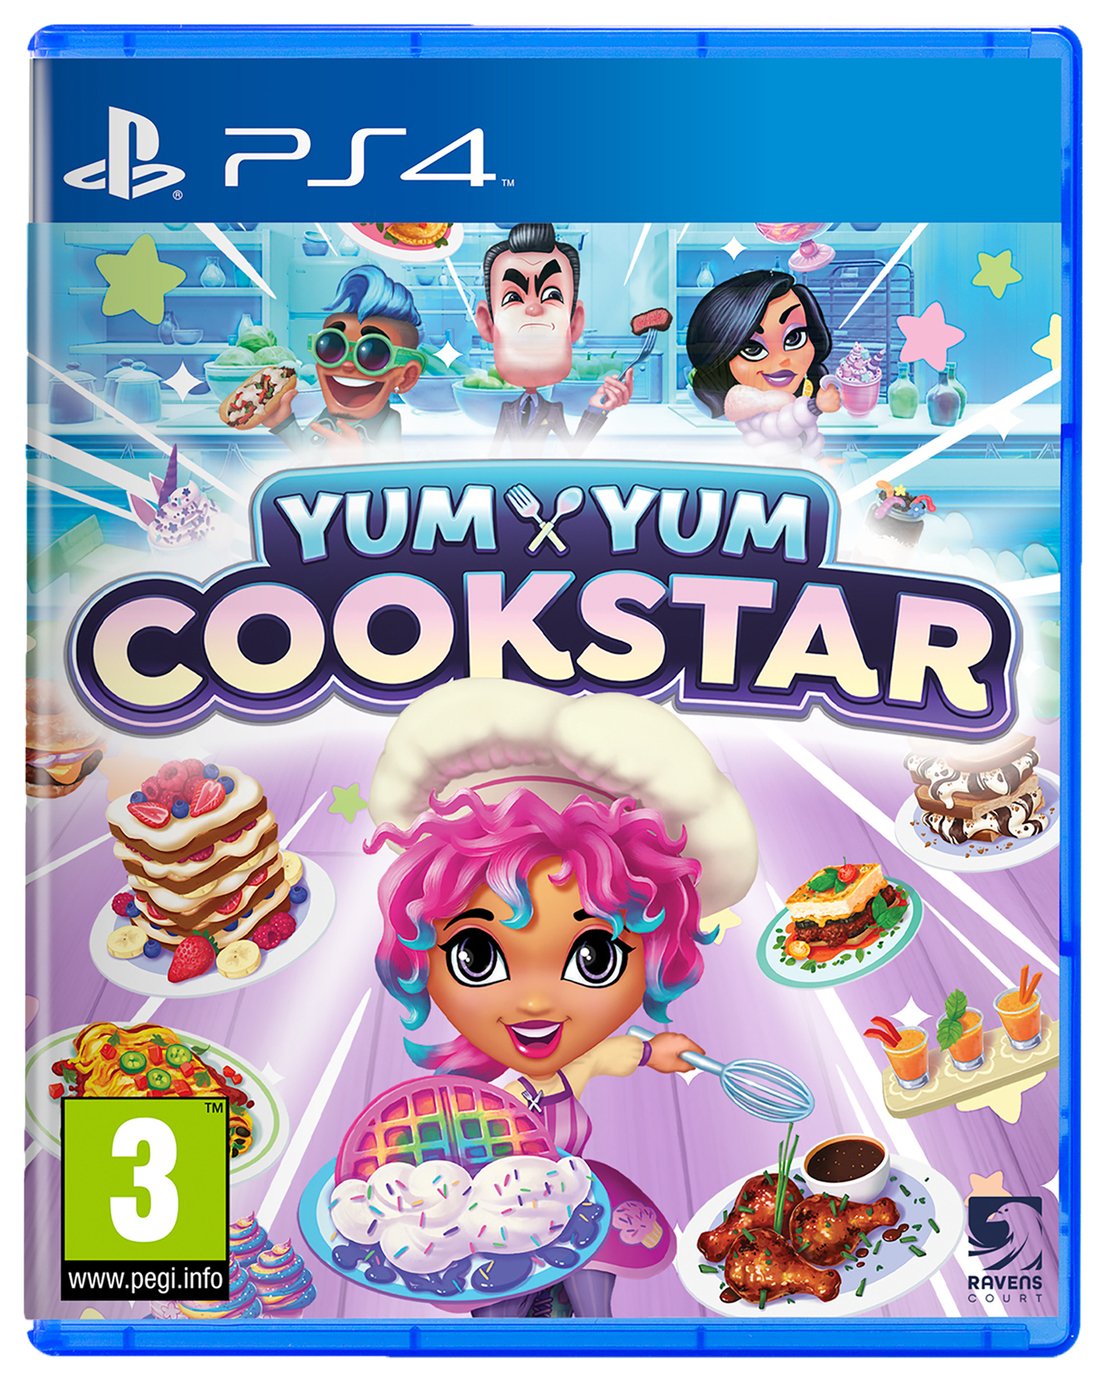 Yum Yum Cookstar PS4 Game